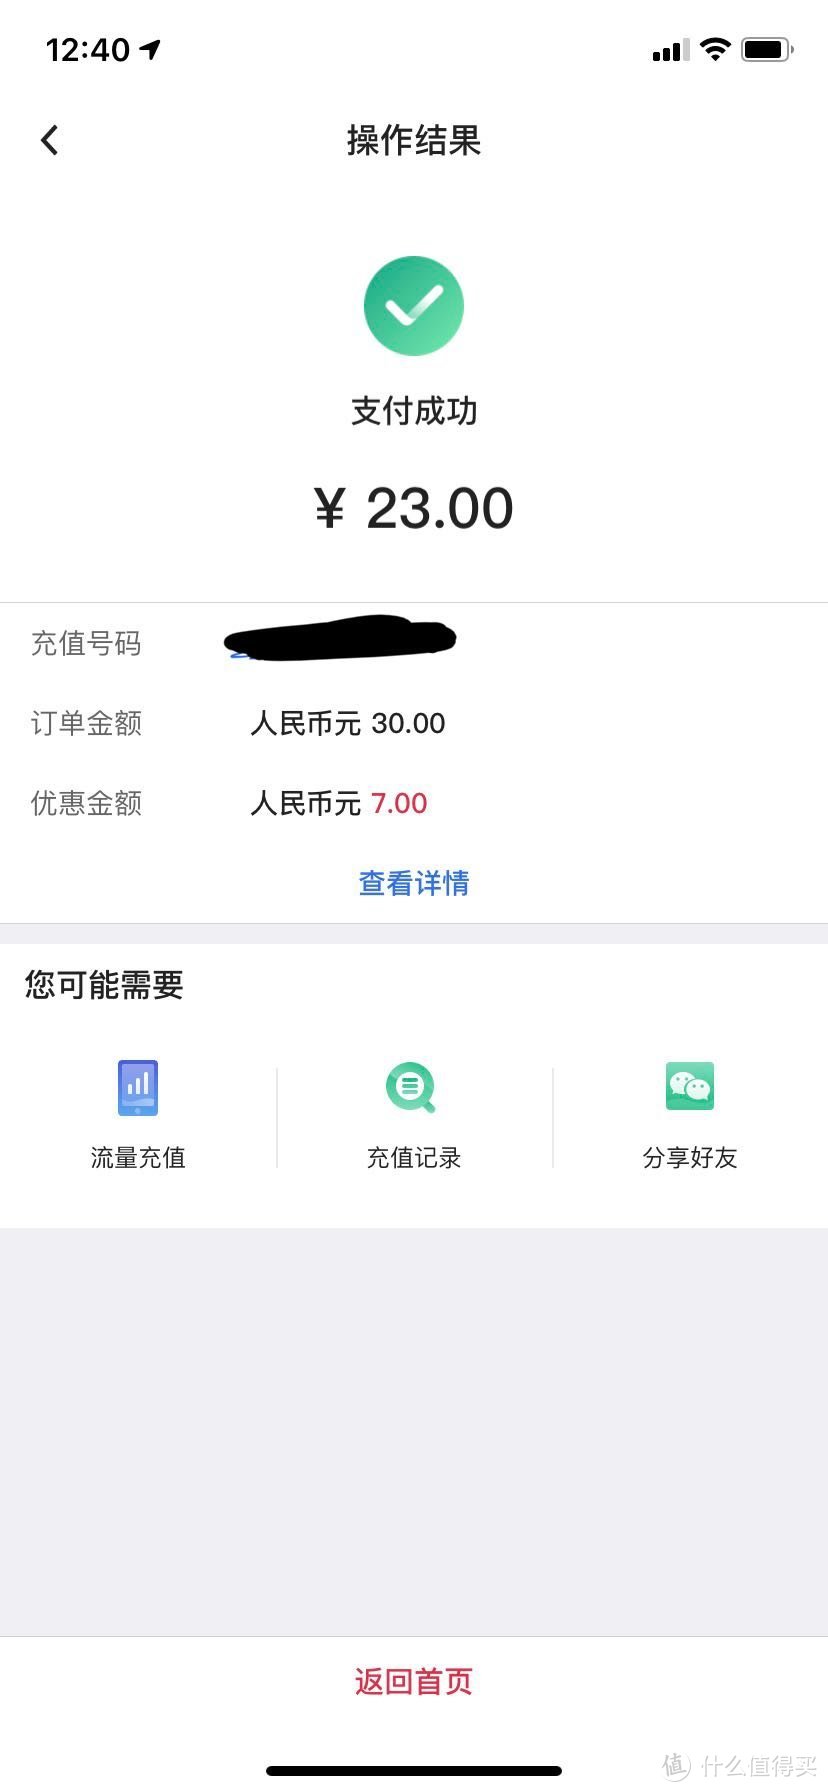 中国银行APP储蓄卡充话费30-7每月可一次